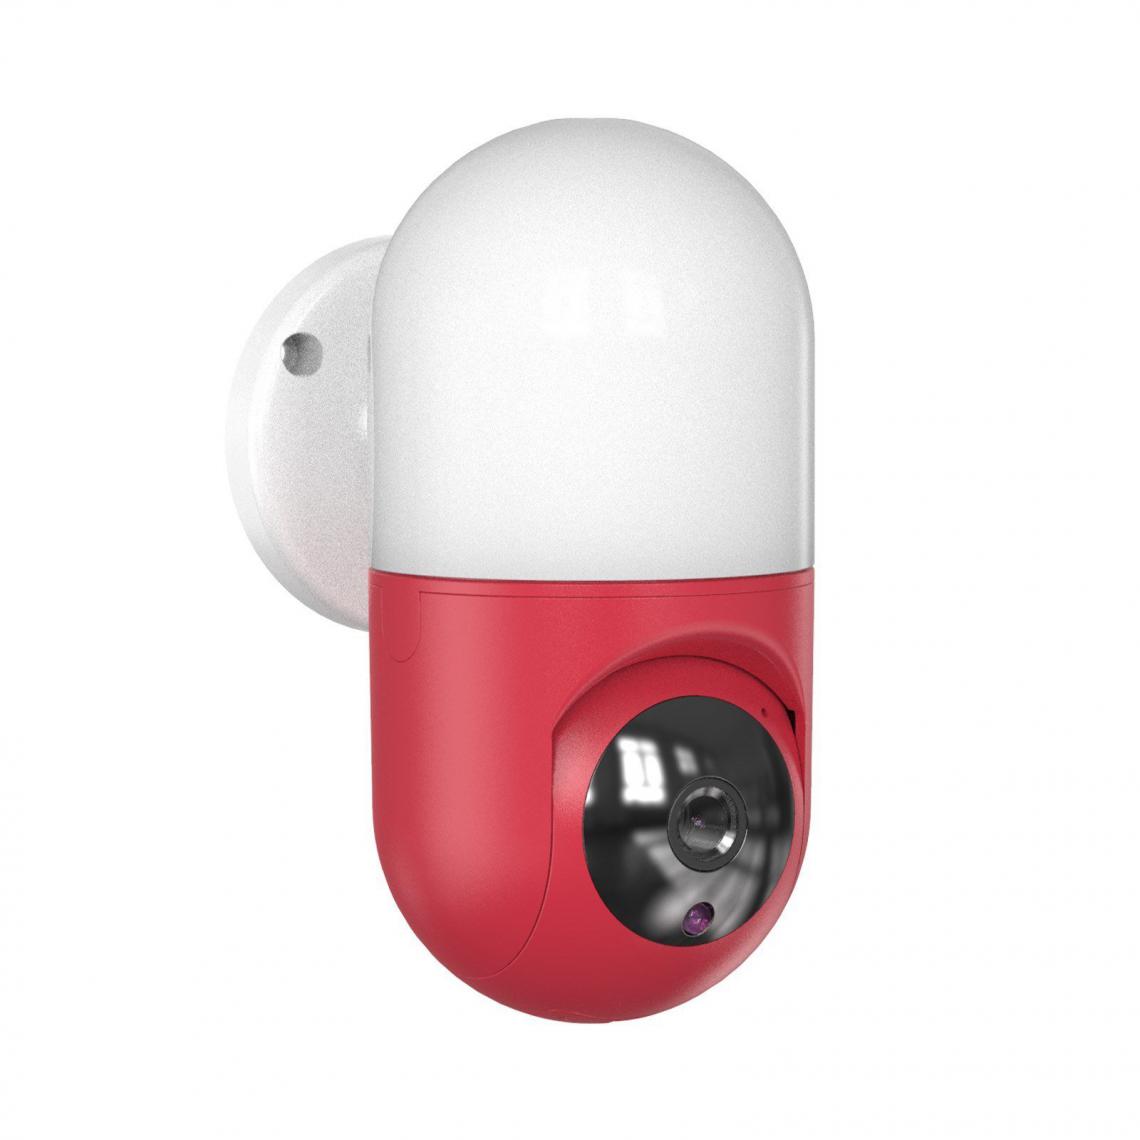 Justgreenbox - Caméra WIFI de sécurité à domicile, Rouge - Accessoires sécurité connectée